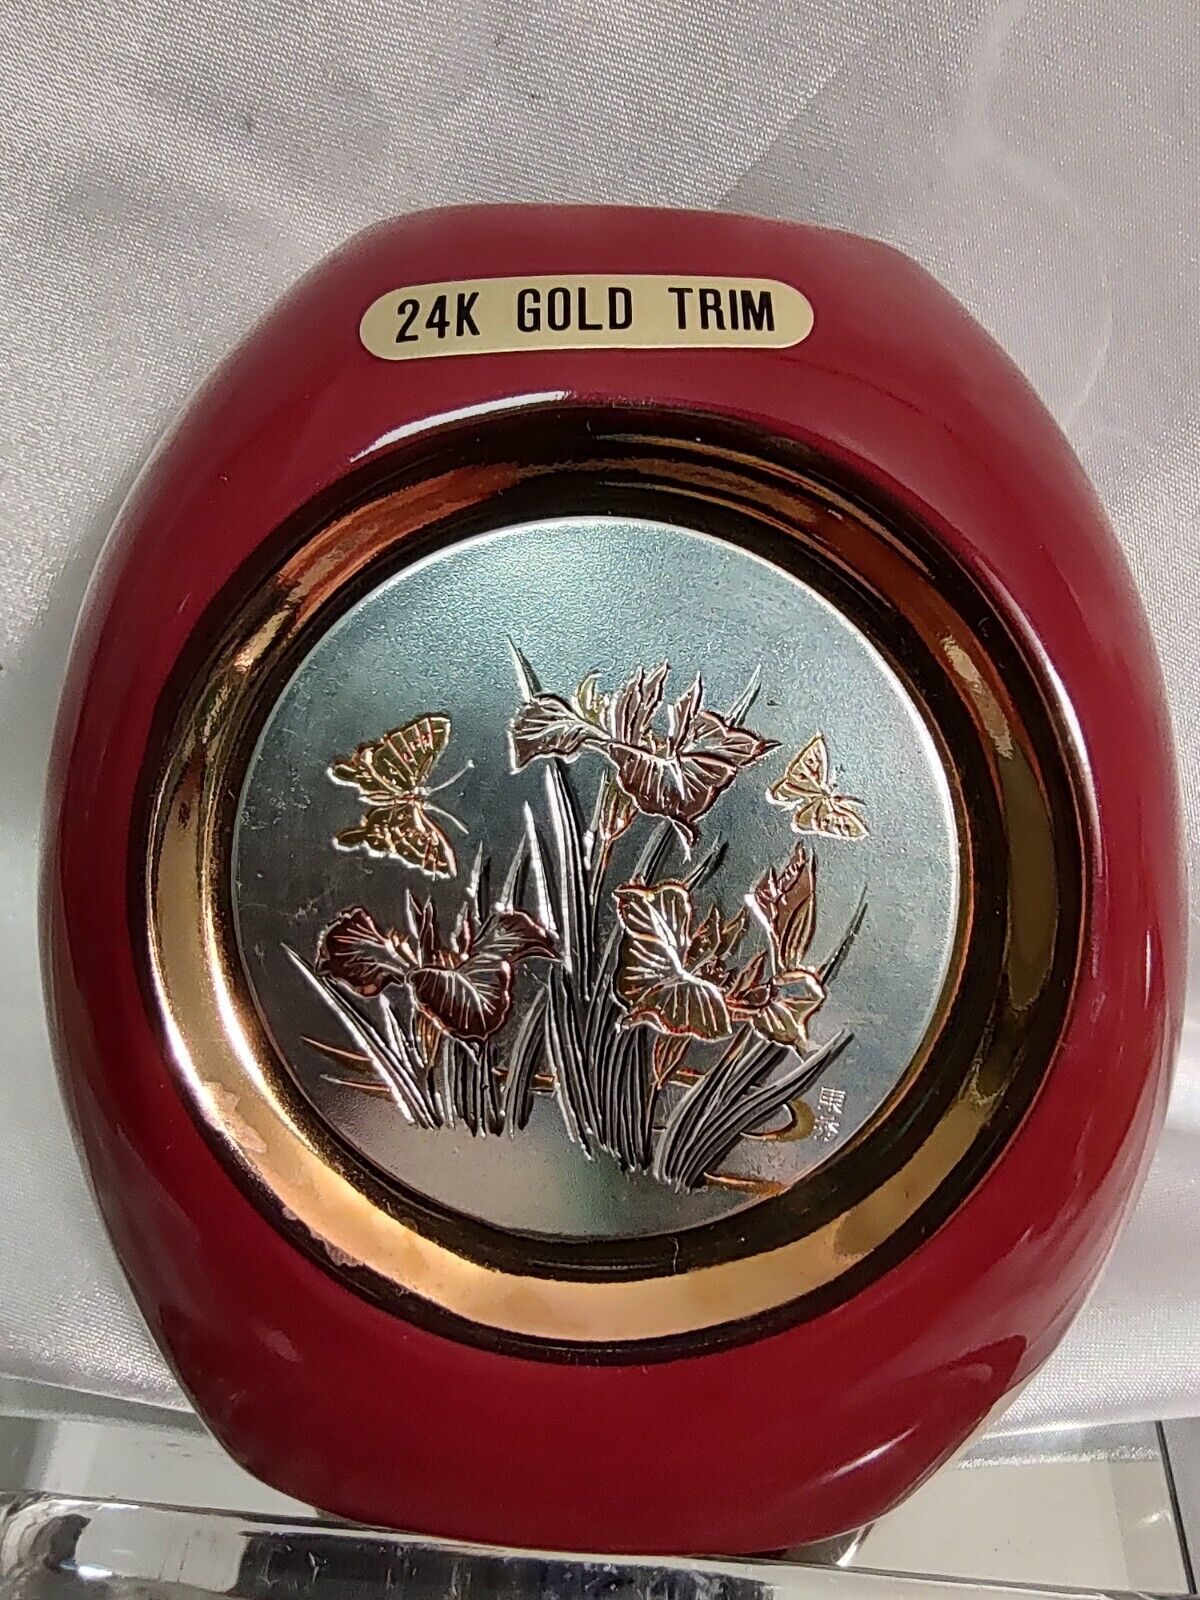 Oriental closisonne mini vase 24kt gold trim burgandy excellent condition